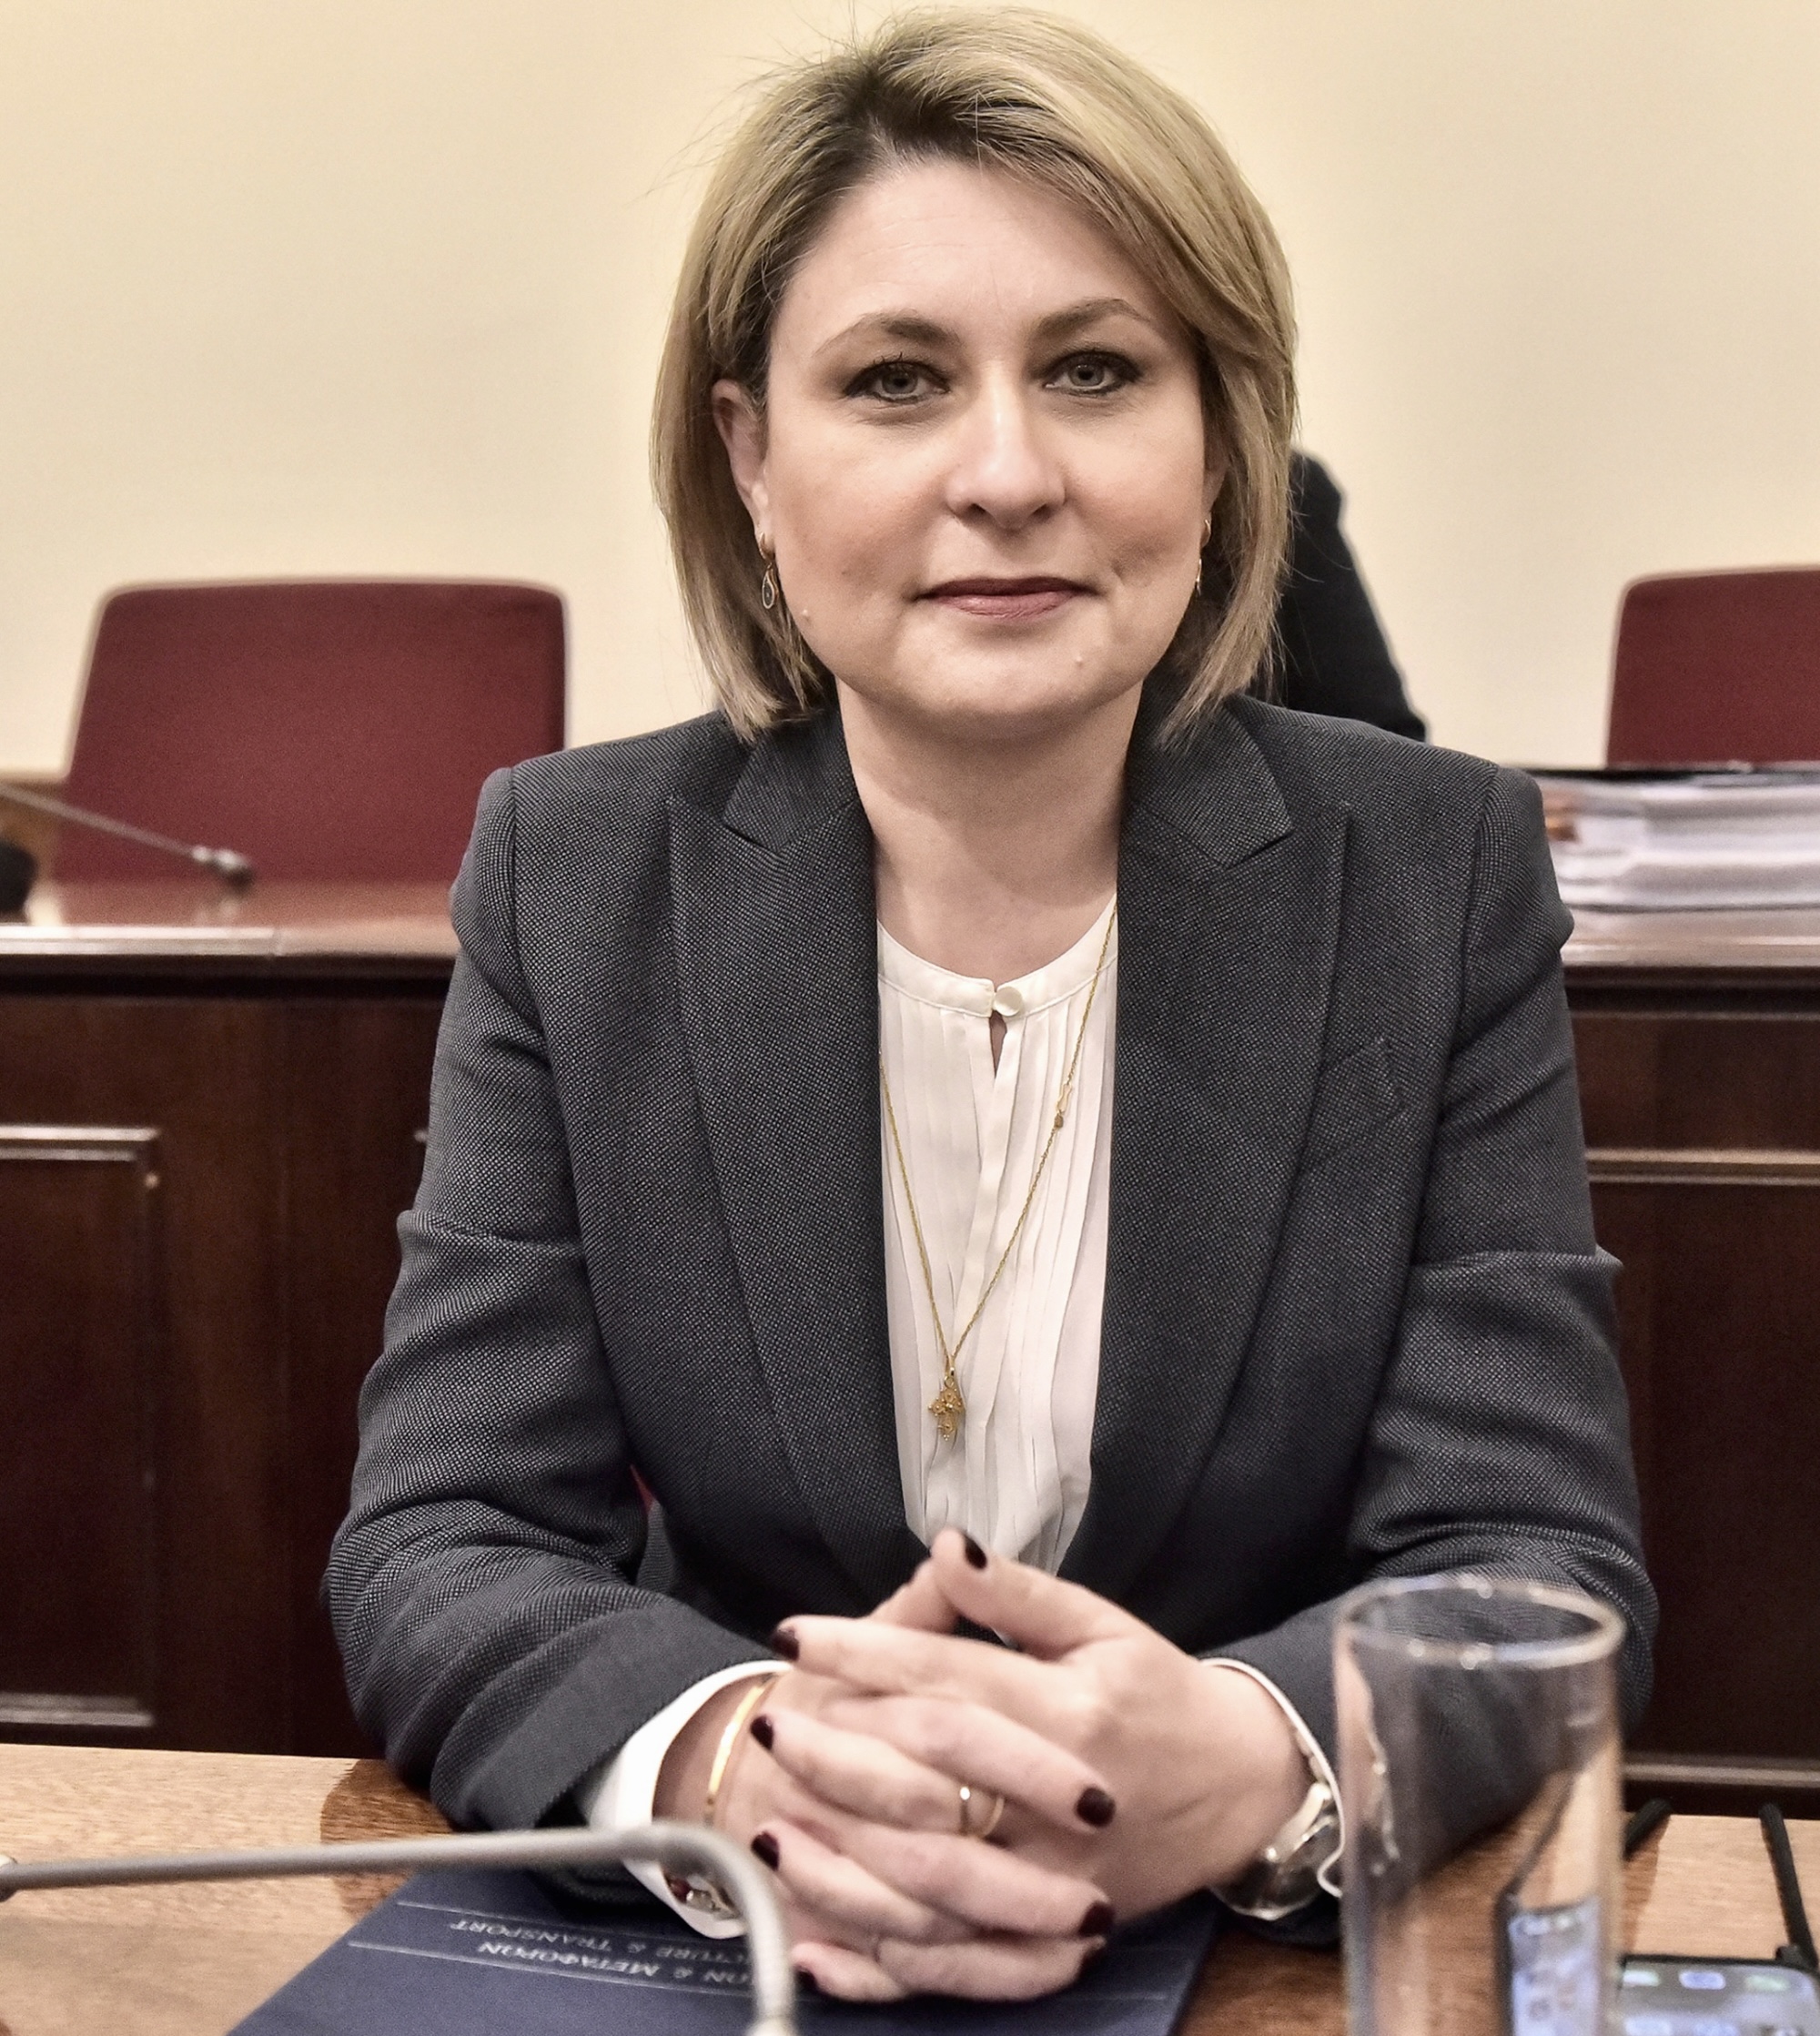 Αλεξοπούλου: Οι ποινές στοv νέο Κ.Ο.Κ. θα αφορούν τον οδηγό και όχι το όχημα